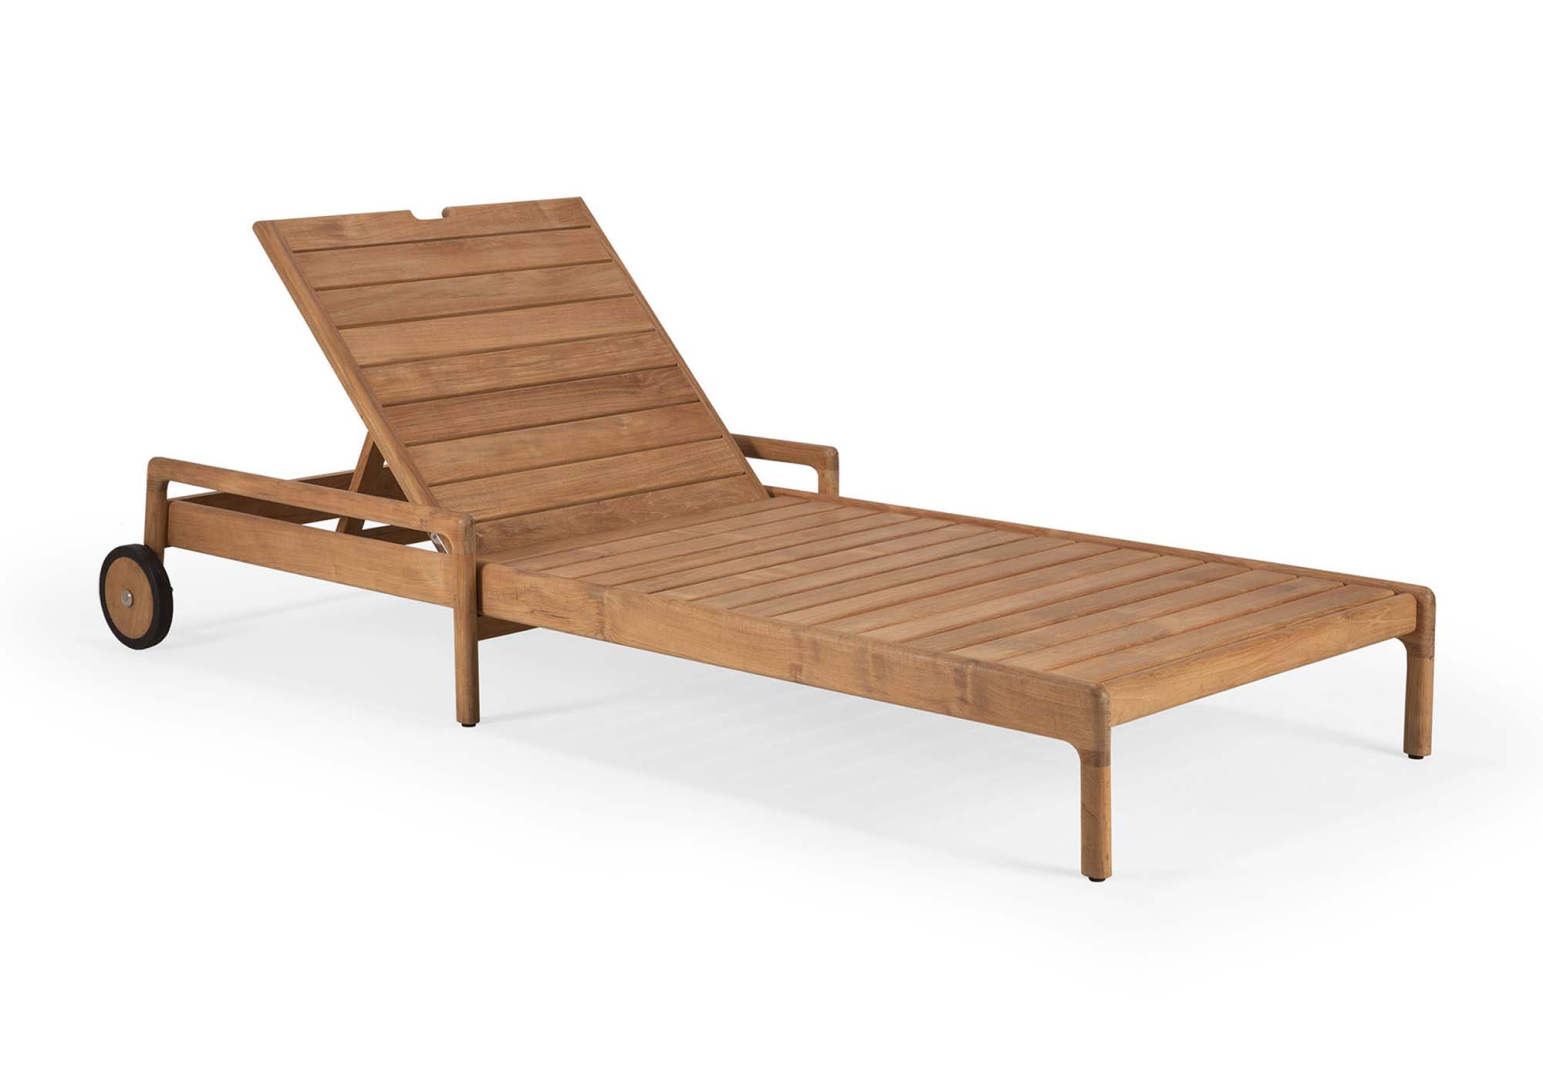 Chaise longue de jardin en bois, Transat, Chaise longue relax de plage,  chaise longue avec accoudoirs. Türkis